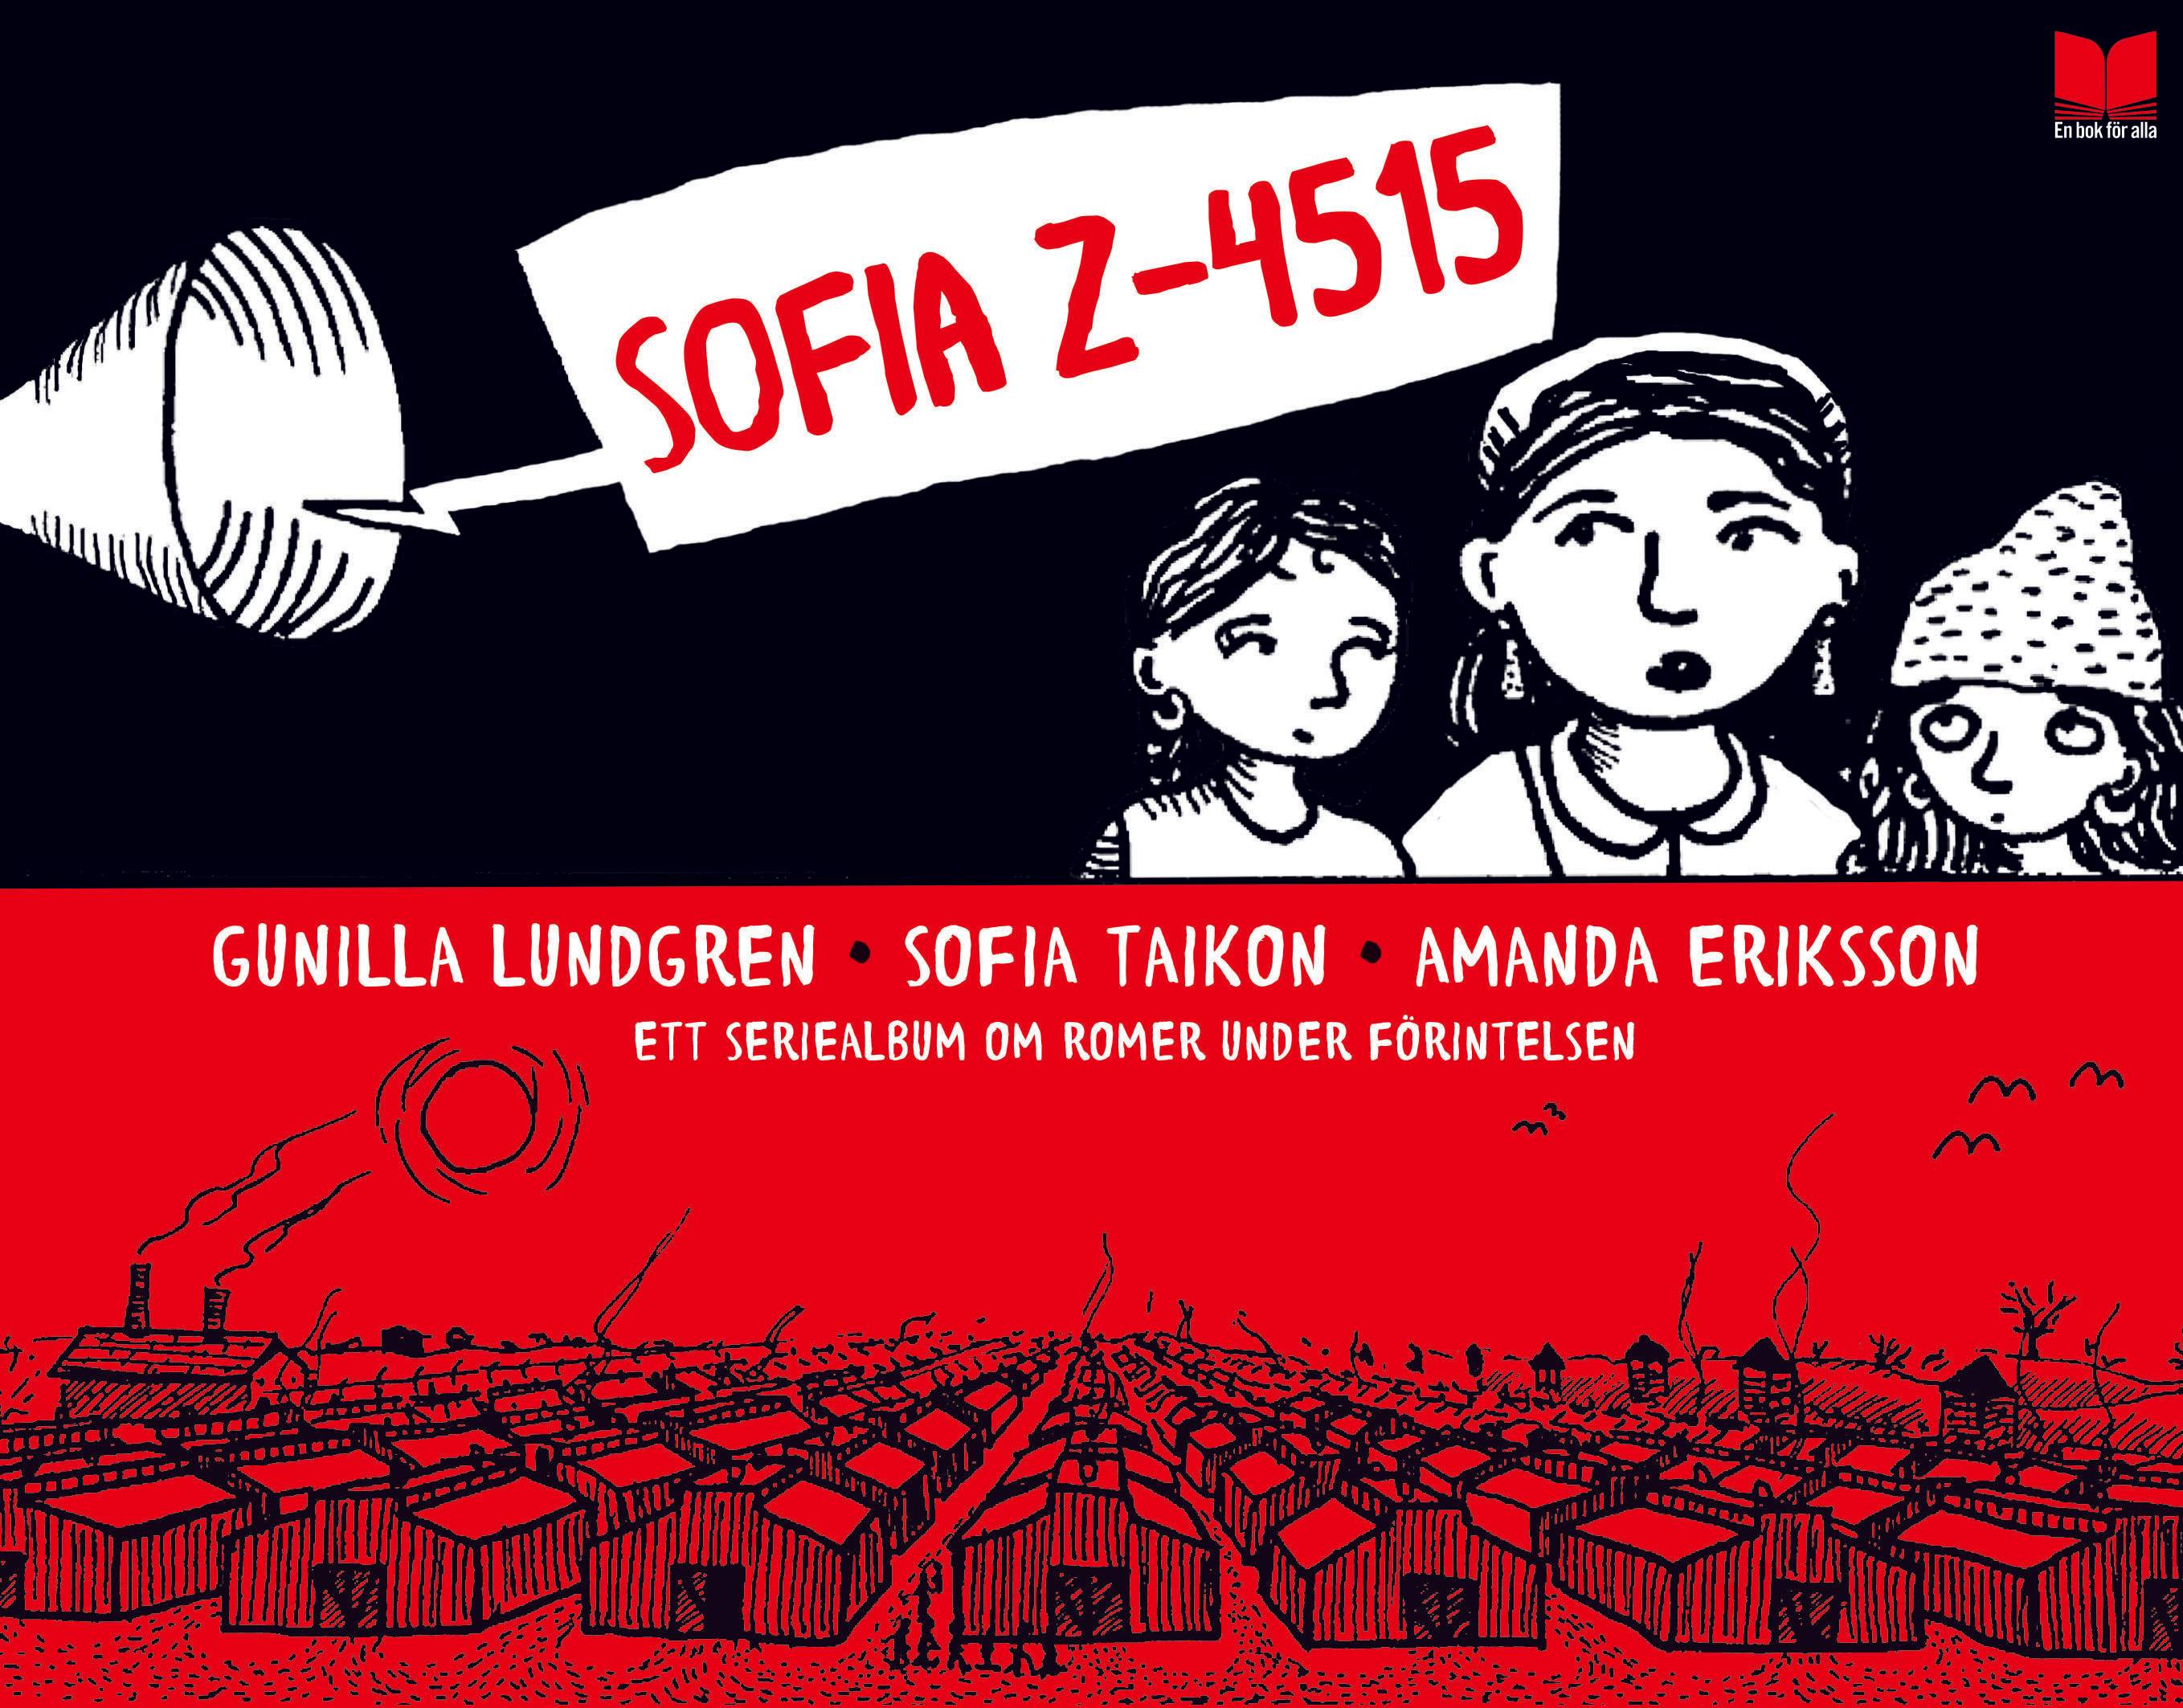 Sofia Z-4515